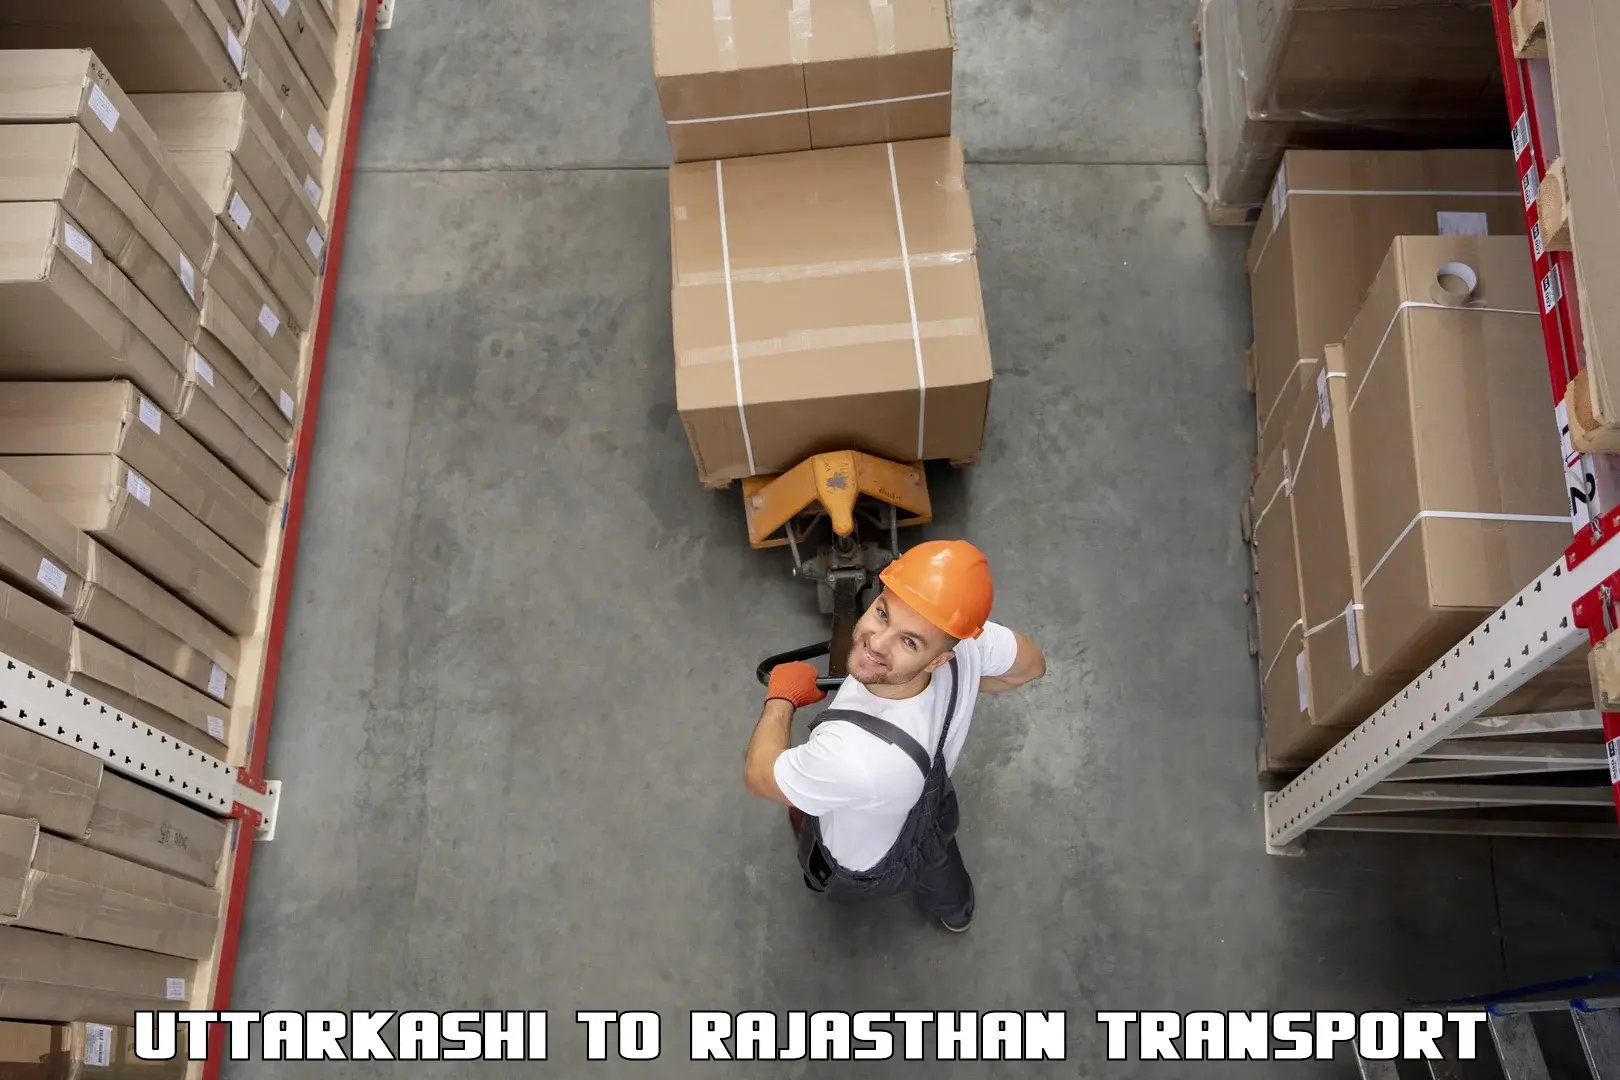 Parcel transport services Uttarkashi to NIT Jaipur